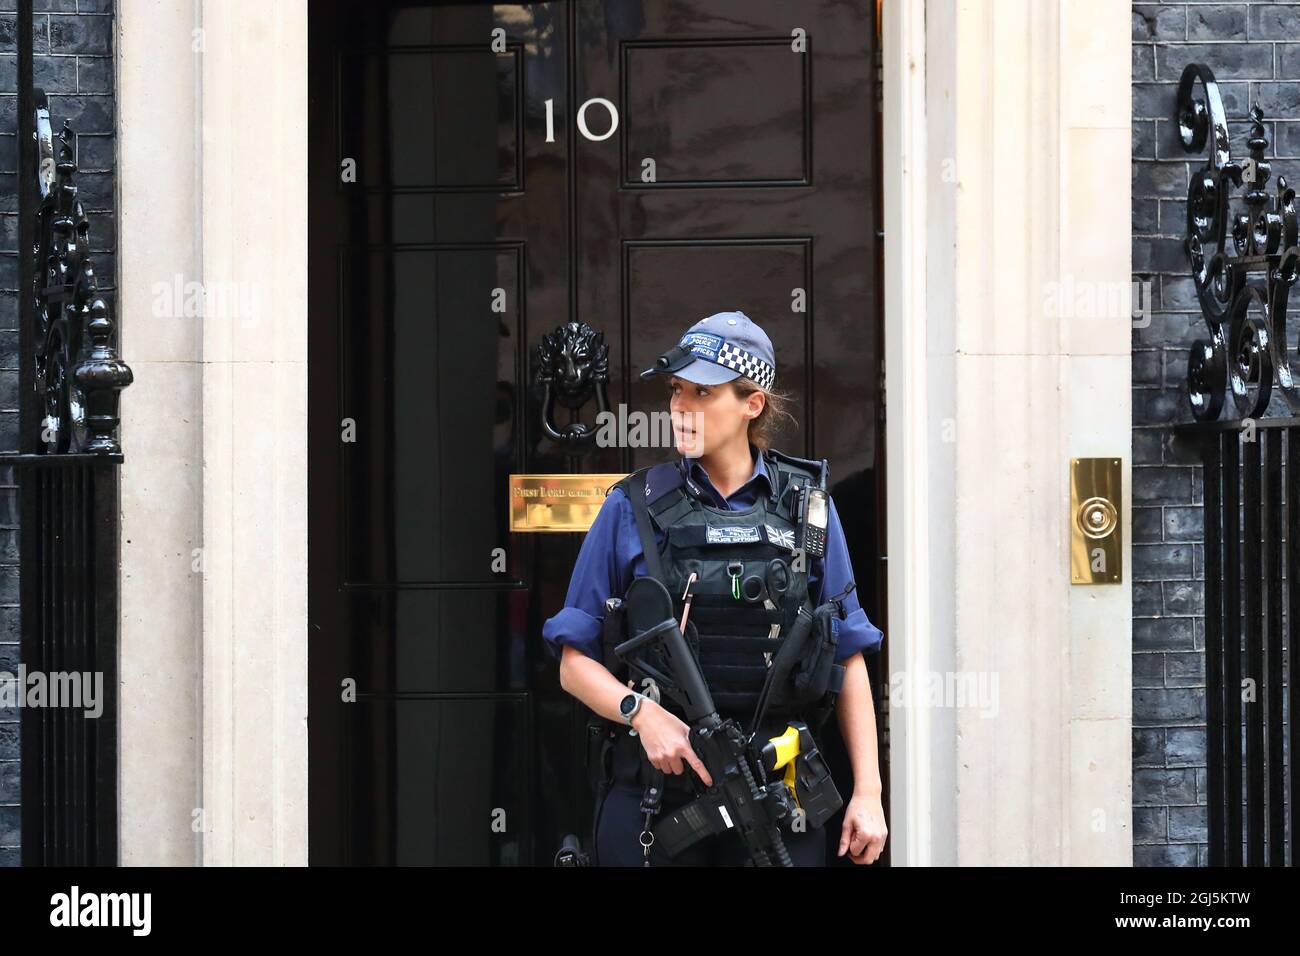 Une femme officier de police armé qui garde Downing Street n° 10 lors d'une alerte à la bombe, en tant que colis suspect, est laissée sans surveillance à proximité, Londres, Royaume-Uni Banque D'Images